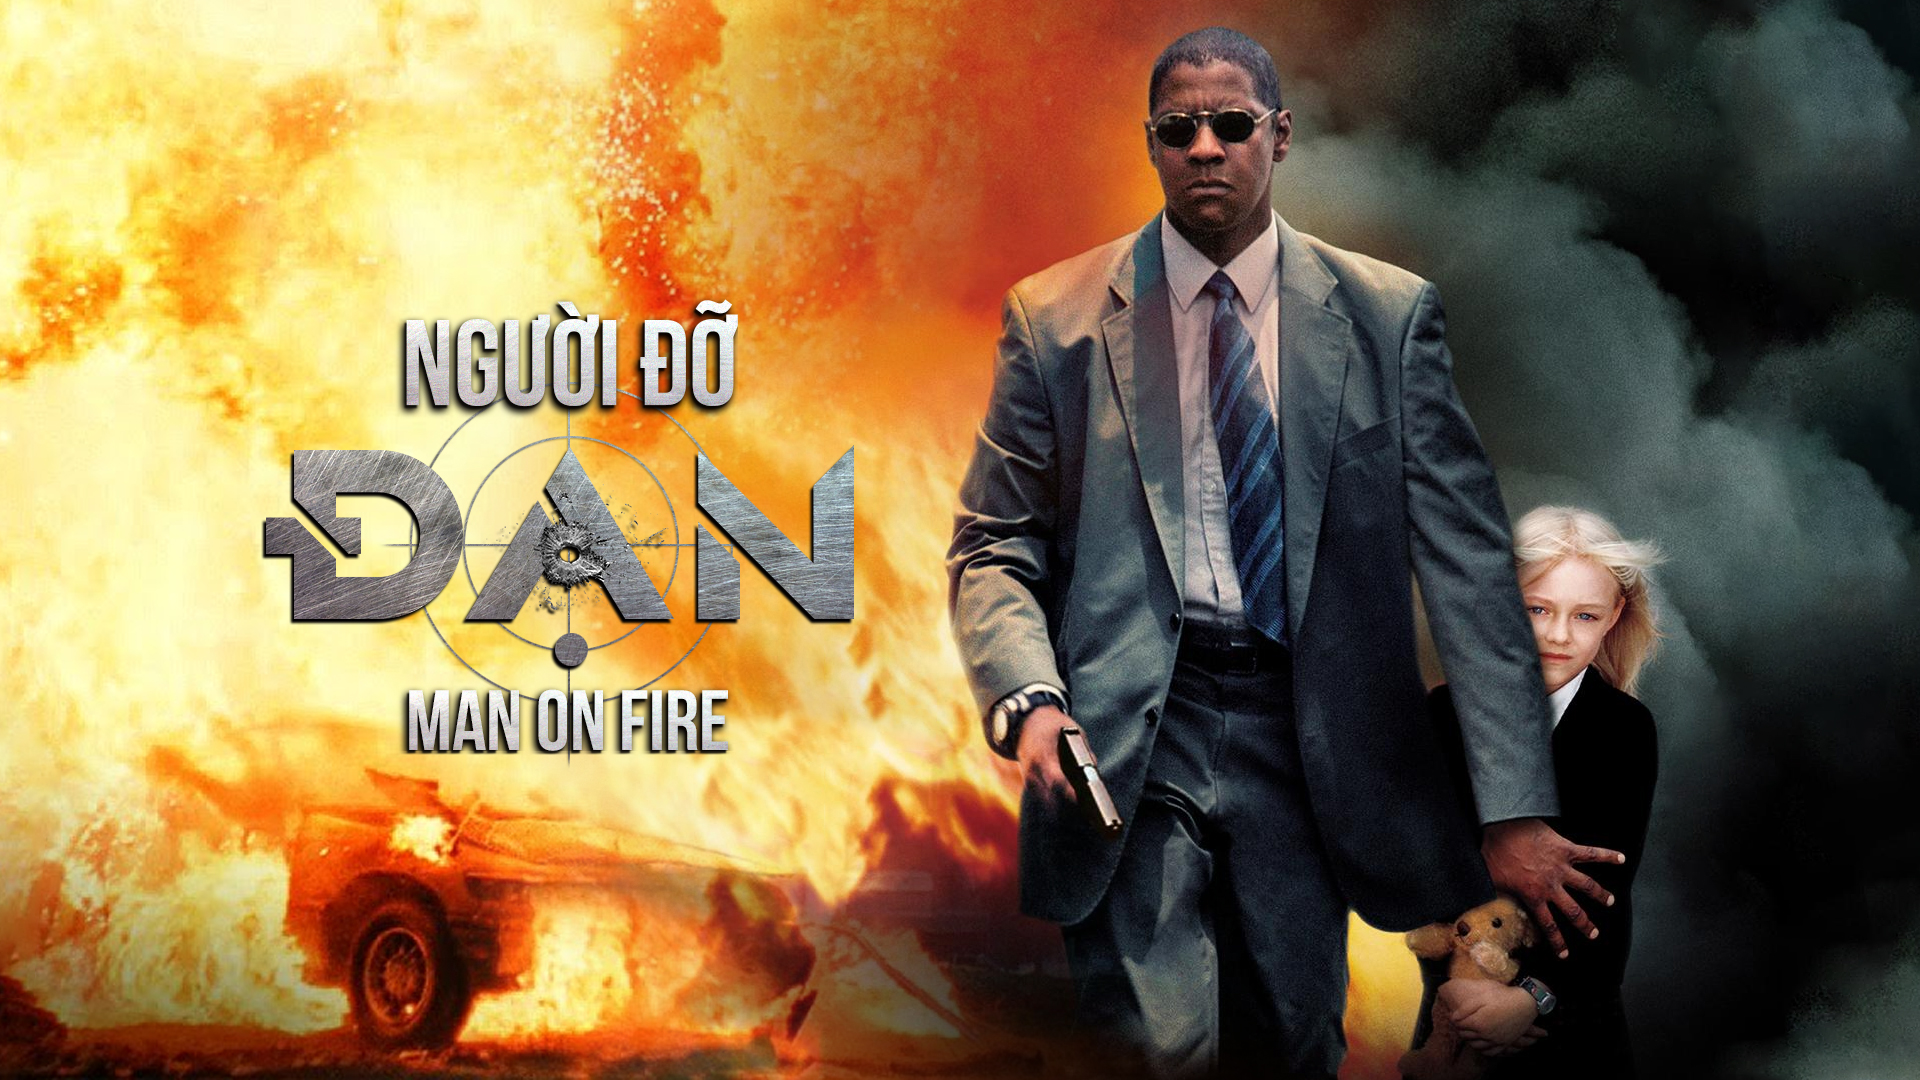 10. Phim Man on Fire - Người đàn ông bị cháy